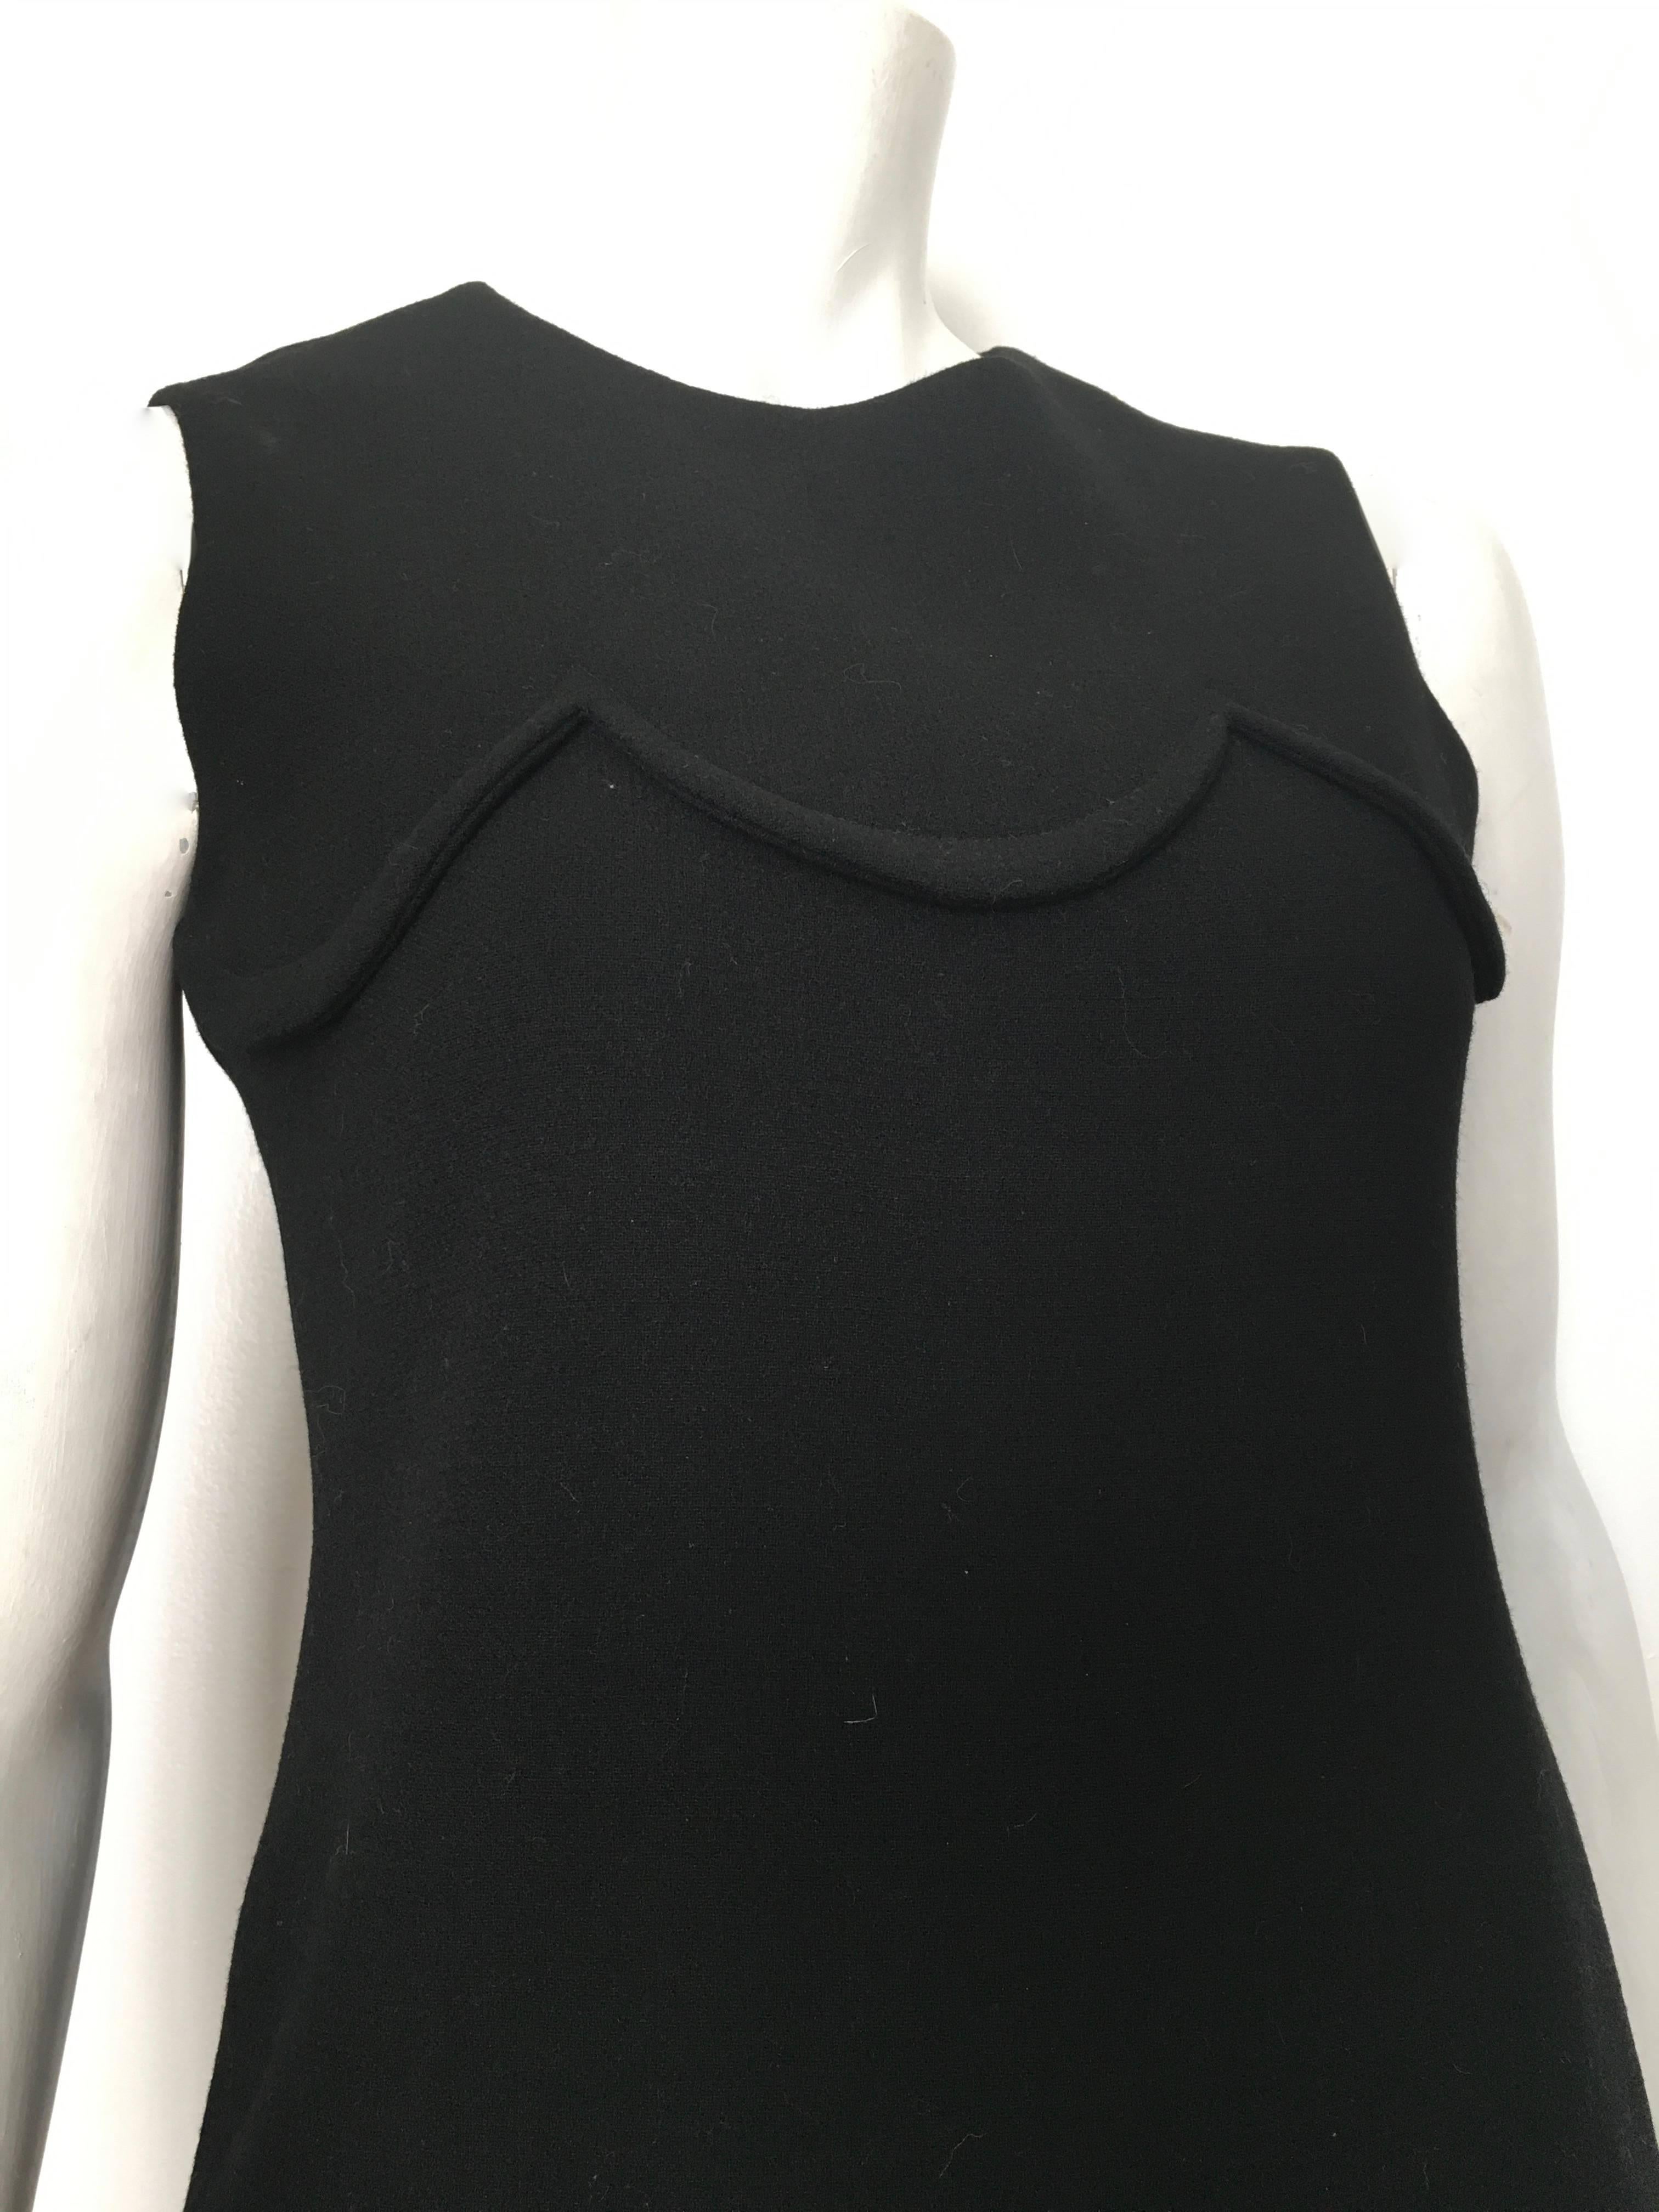 Women's or Men's Pierre Cardin for Saks Fifth Avenue 1971 Black Wool Sleeveless Dress Size 6.